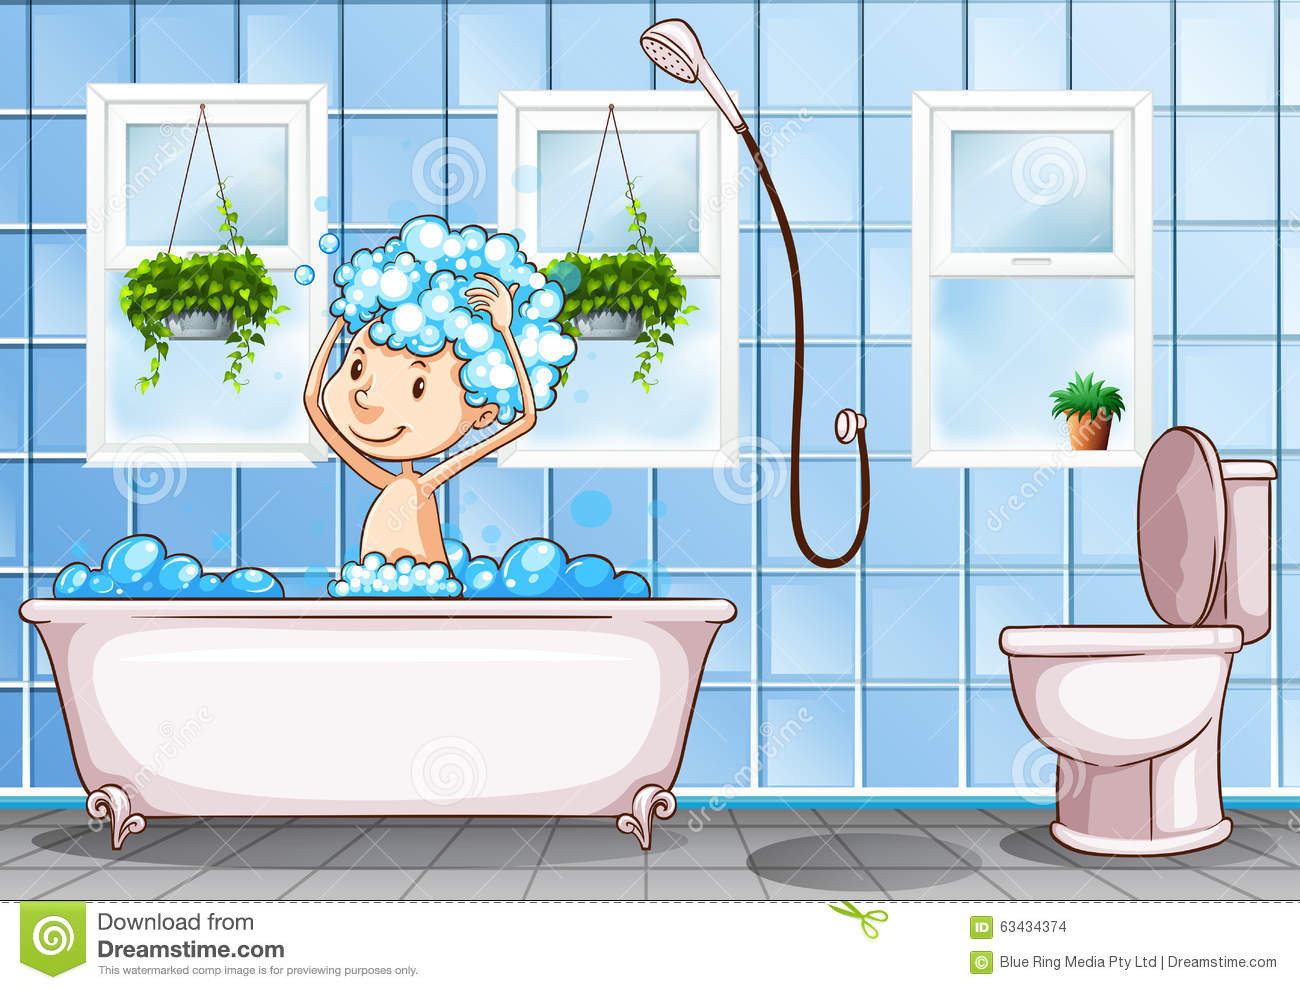 Bathroom Clipart for Kids Elegant Bathroom Clipart for Kids – 101 Clip Art